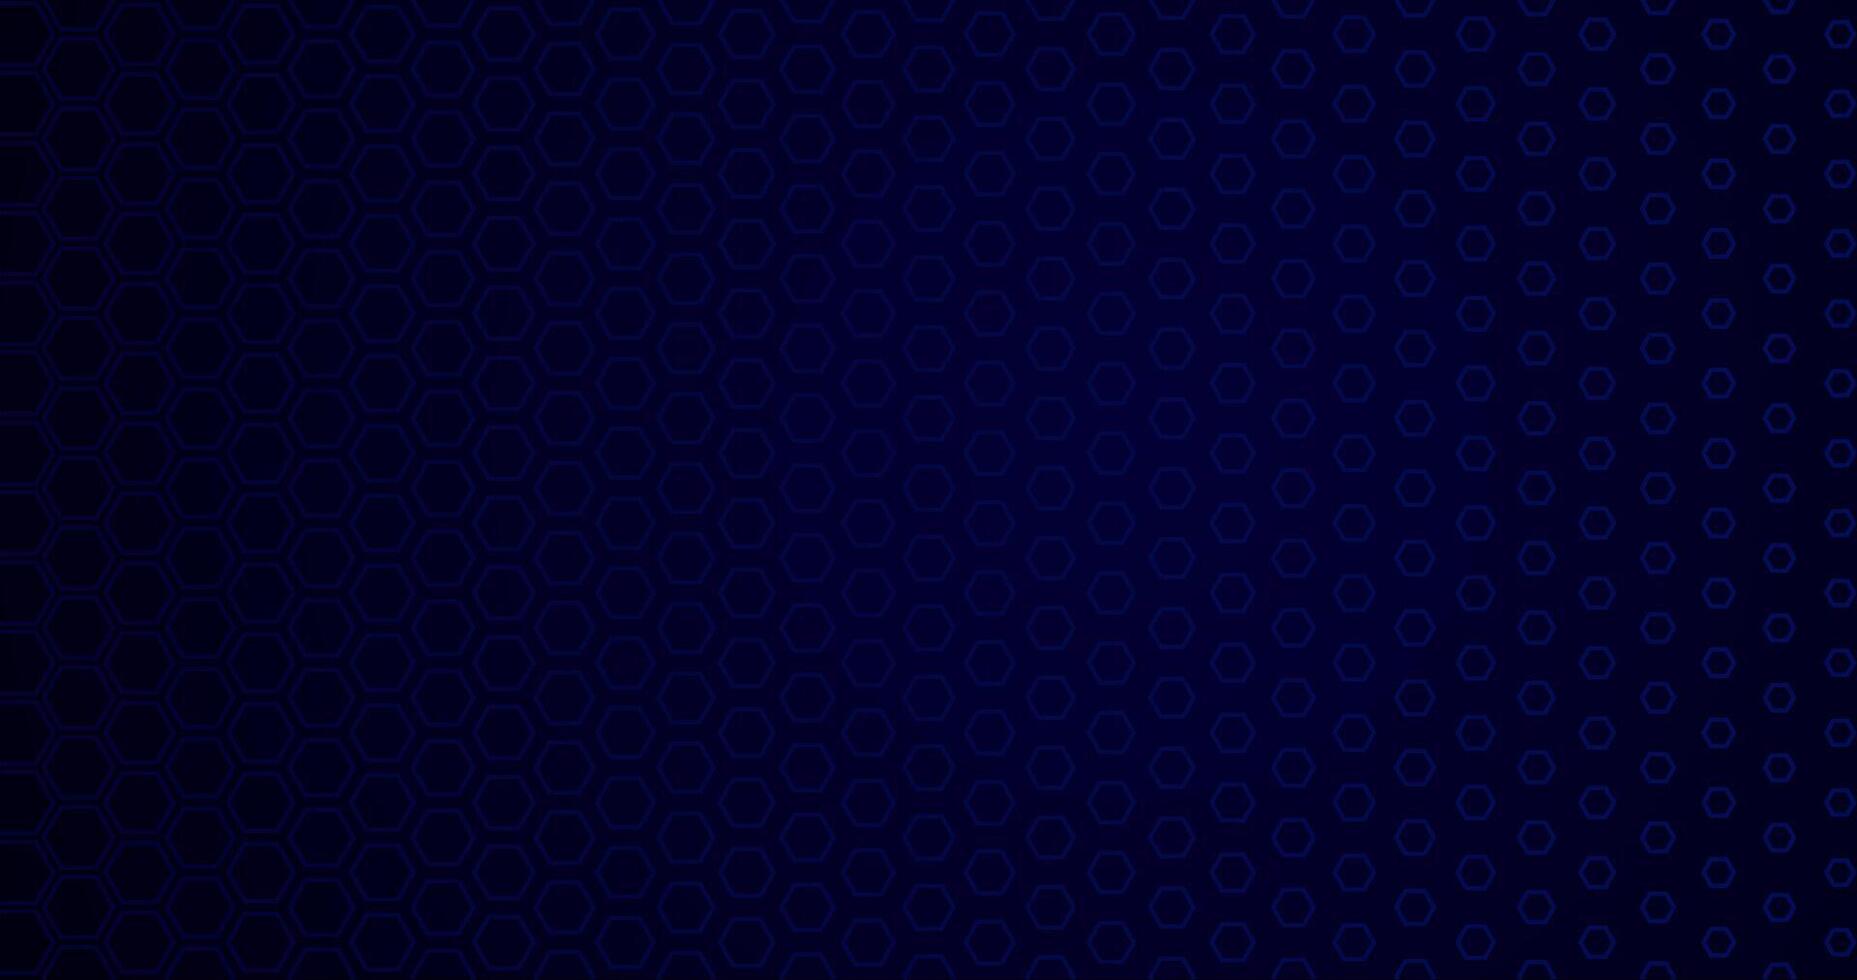 abstract elegant donker blauw achtergrond met hex patroon vector